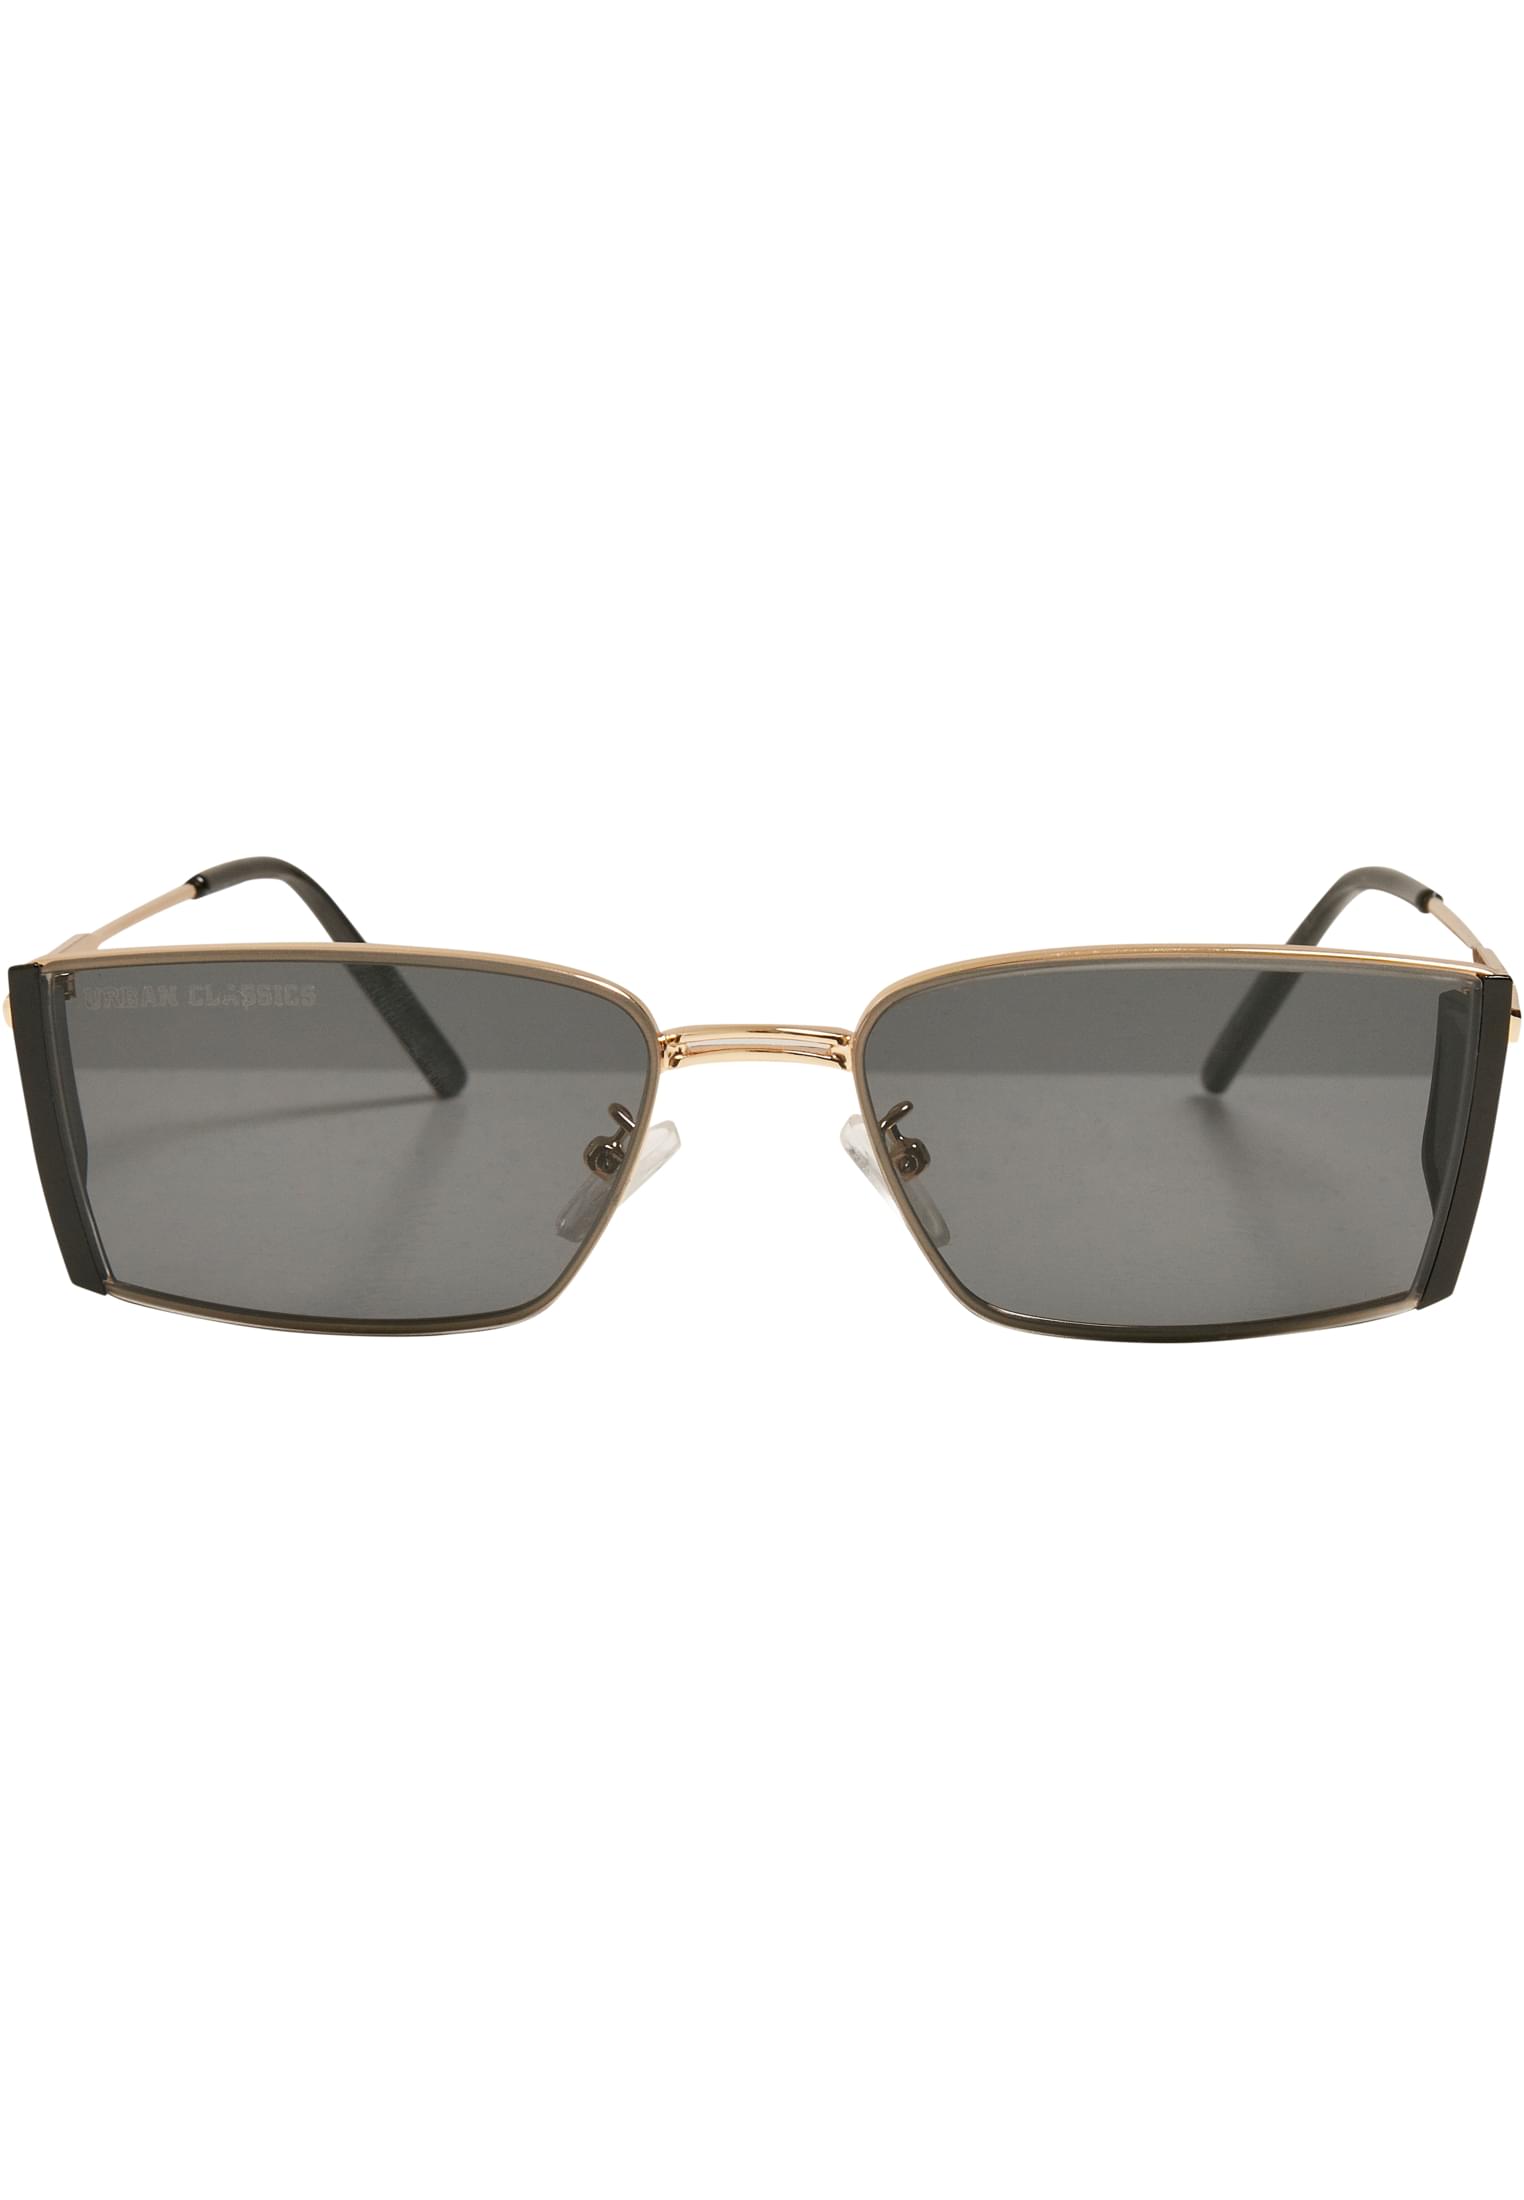 Ohio-TB5163 Sunglasses